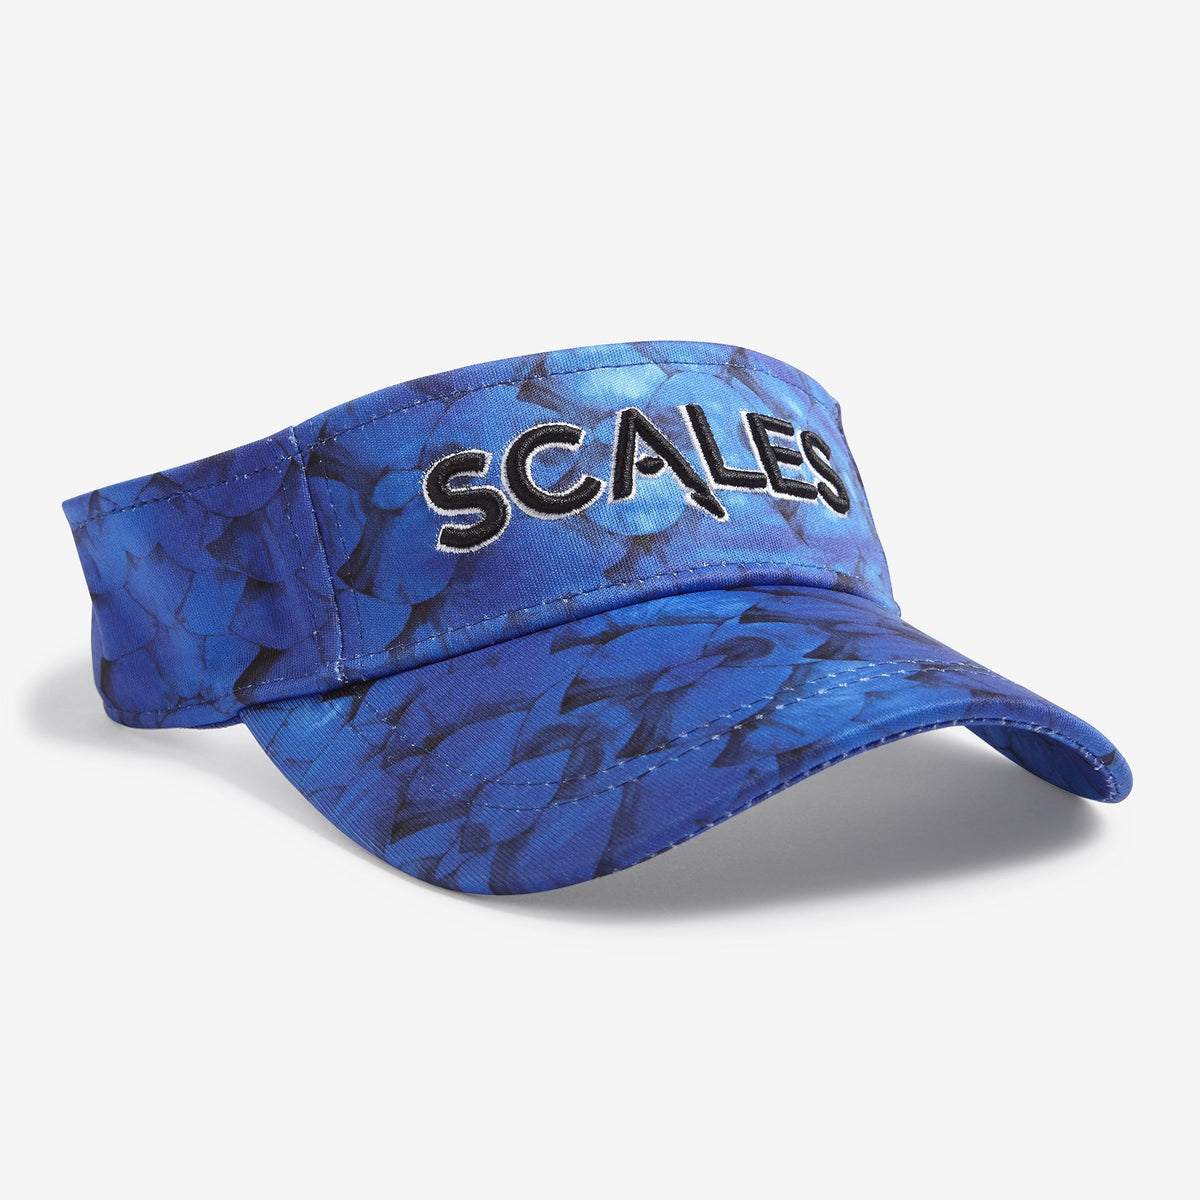 SCALES Ocean Visor - Blue